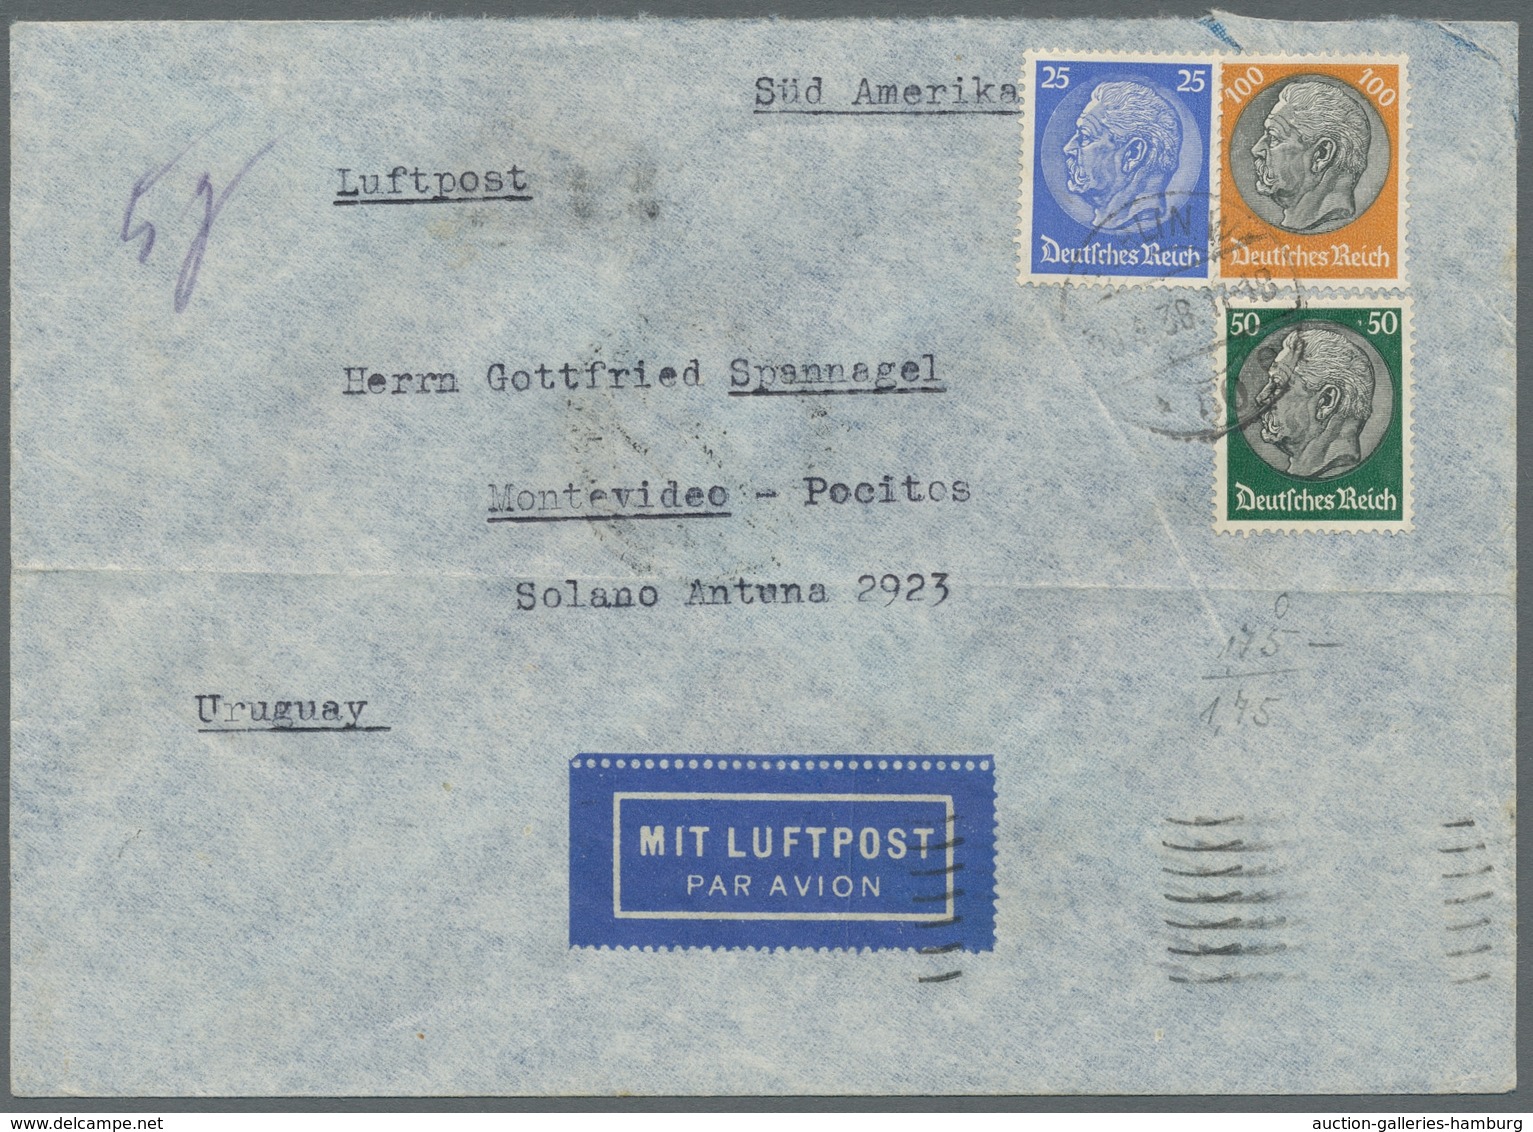 Deutsches Reich - 3. Reich: 1934-1938, Partie von 5 Luftpostbriefen welche alle nach Montevideo/Urug